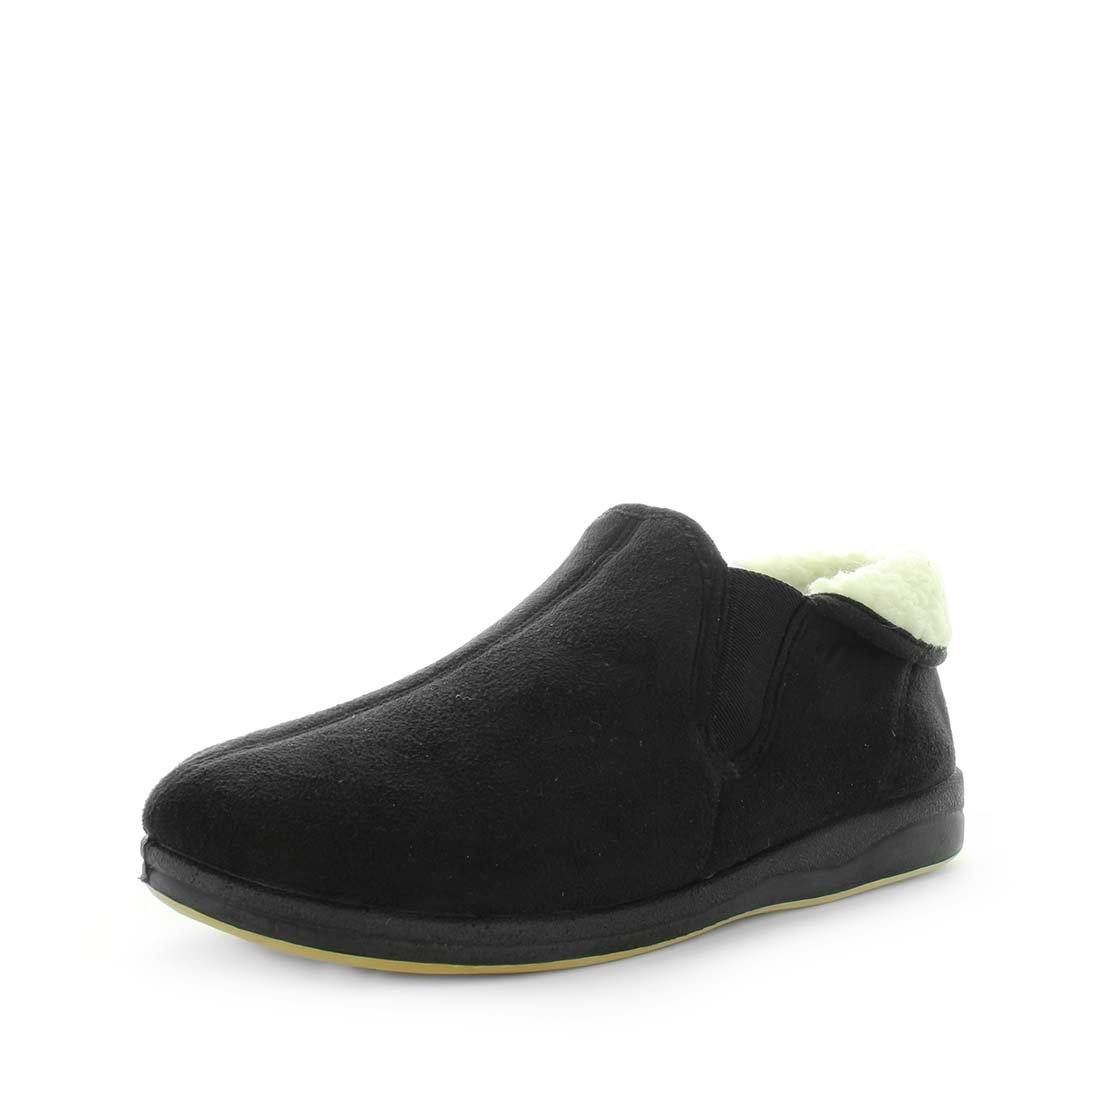 TEZZA by PANDA - iShoes - Men's Shoes, Men's Shoes: Slippers - FOOTWEAR-FOOTWEAR